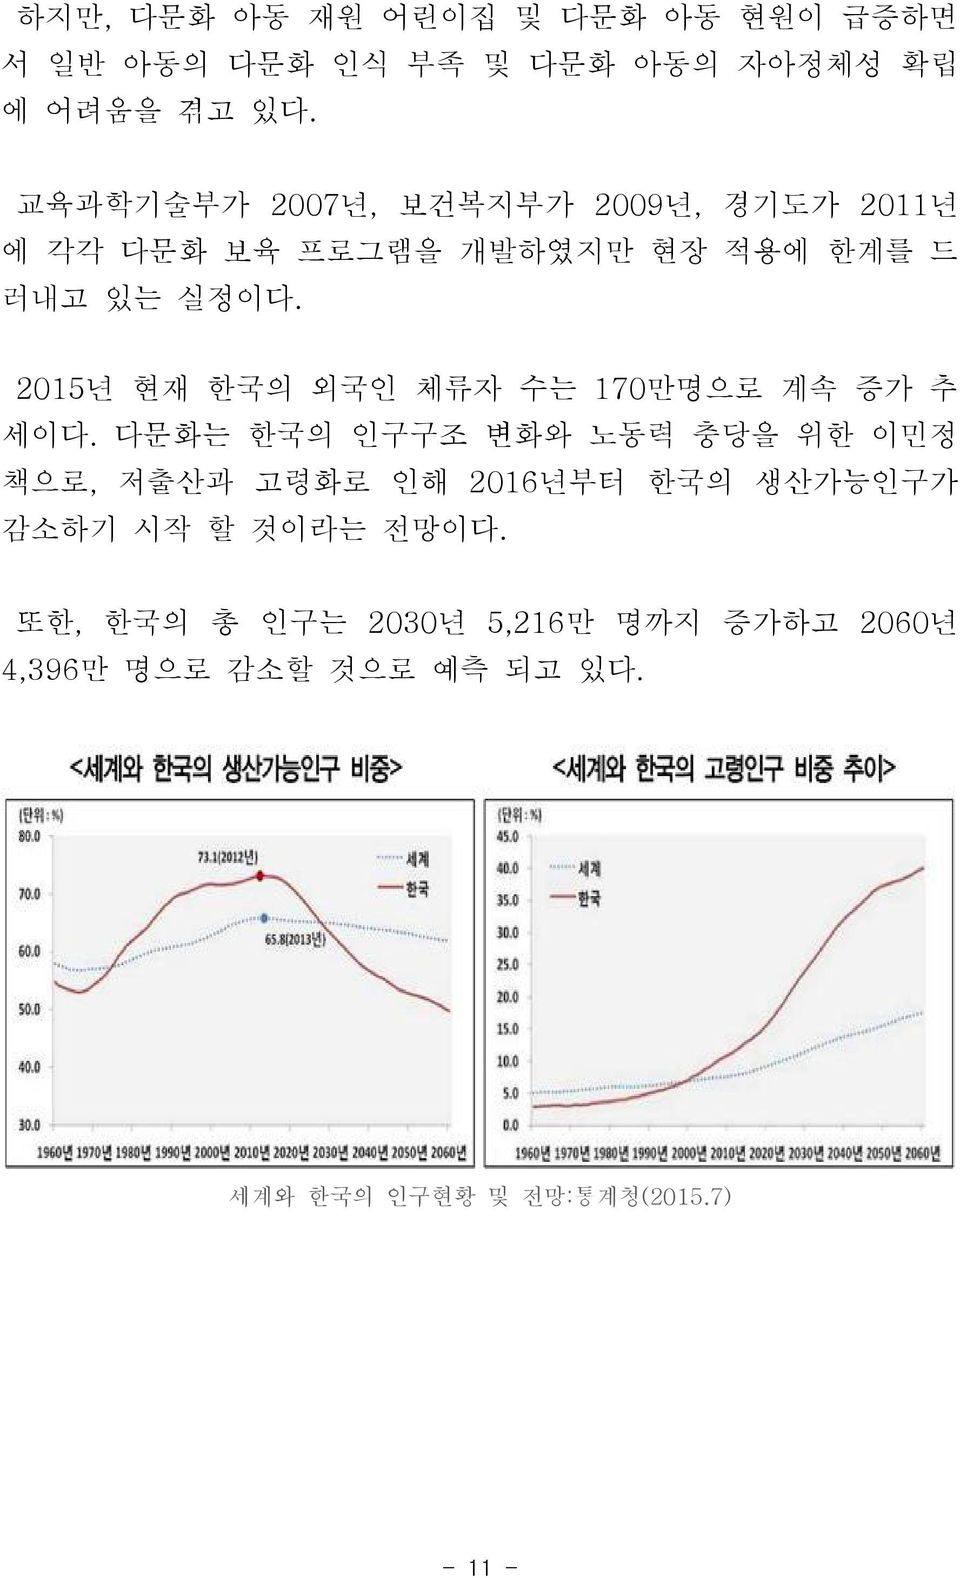 2015년 현재 한국의 외국인 체류자 수는 170만명으로 계속 증가 추 세이다.